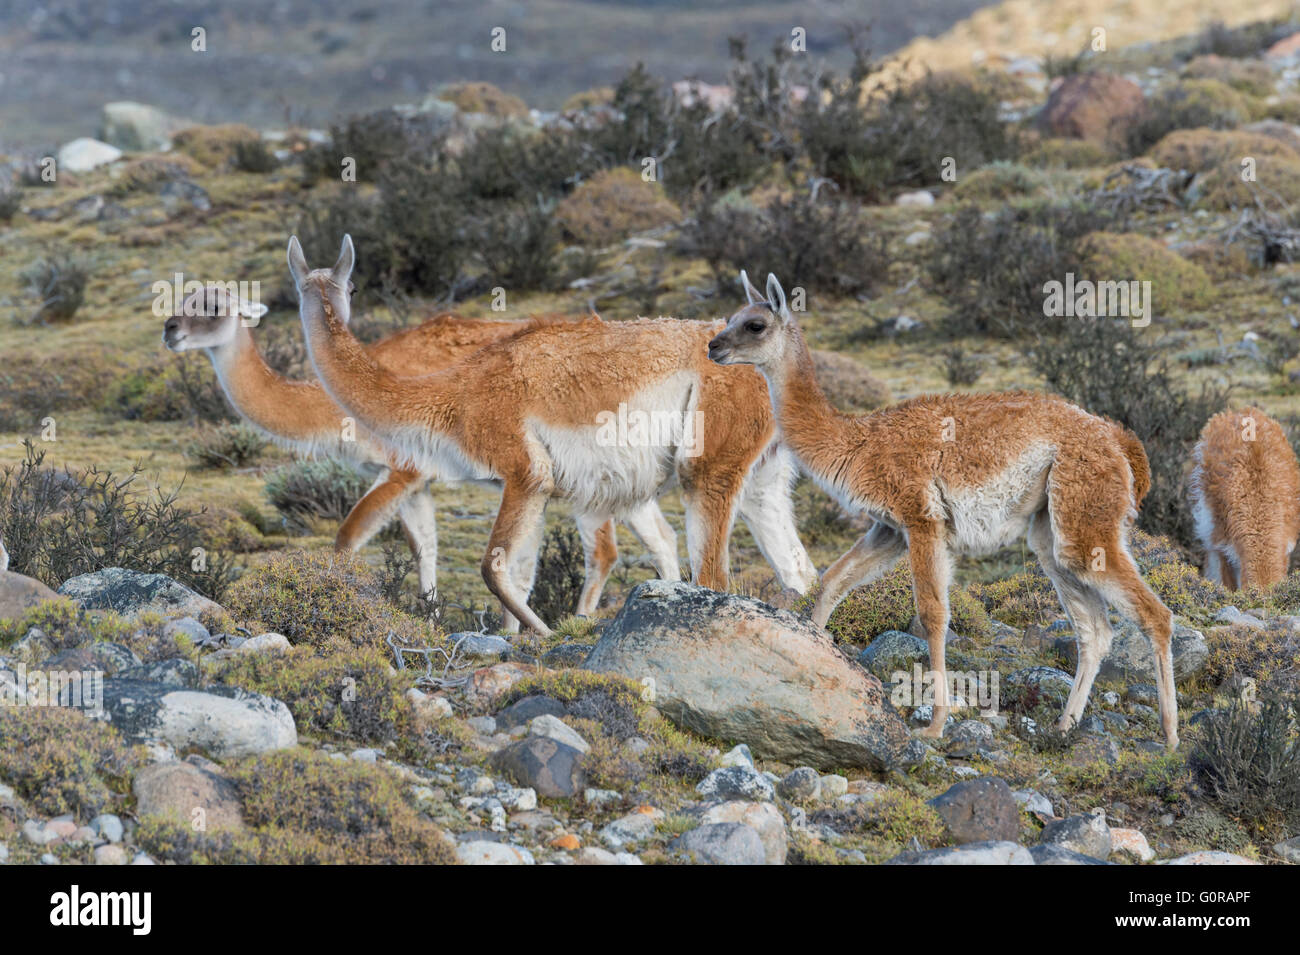 Groupe de guanacos (Lama guanicoe) dans la steppe, Parc National Torres del Paine, Patagonie chilienne, Chili Banque D'Images